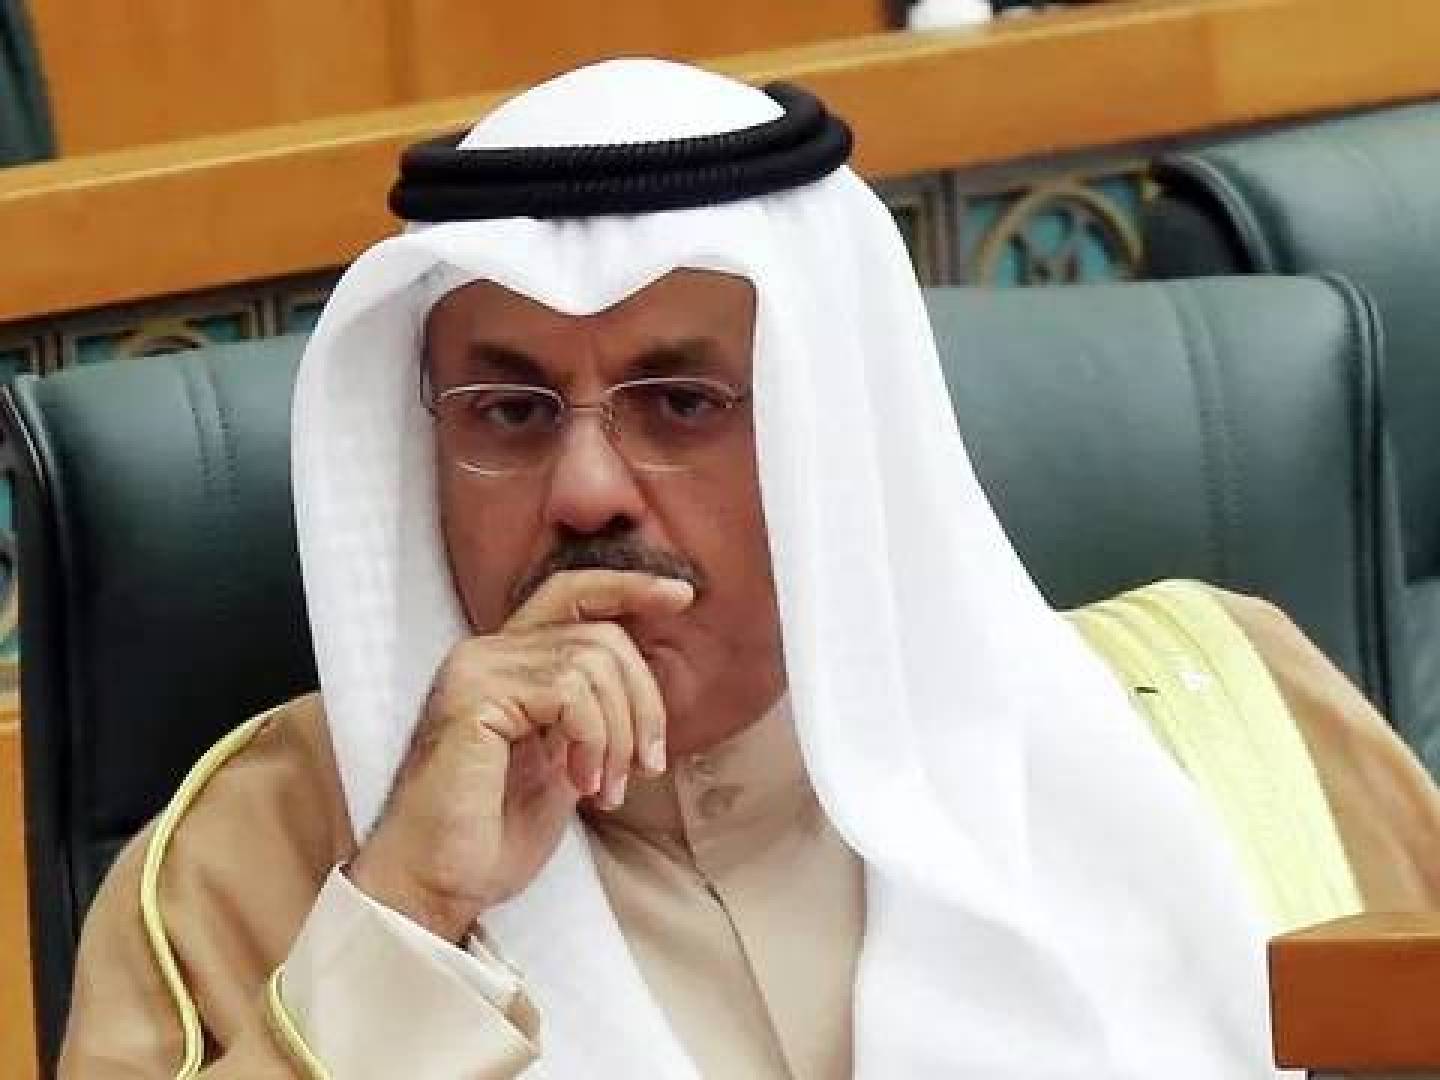 عاجل : أمير الكويت يتعرض لوعكة صحية وينقل إلى المستشفى